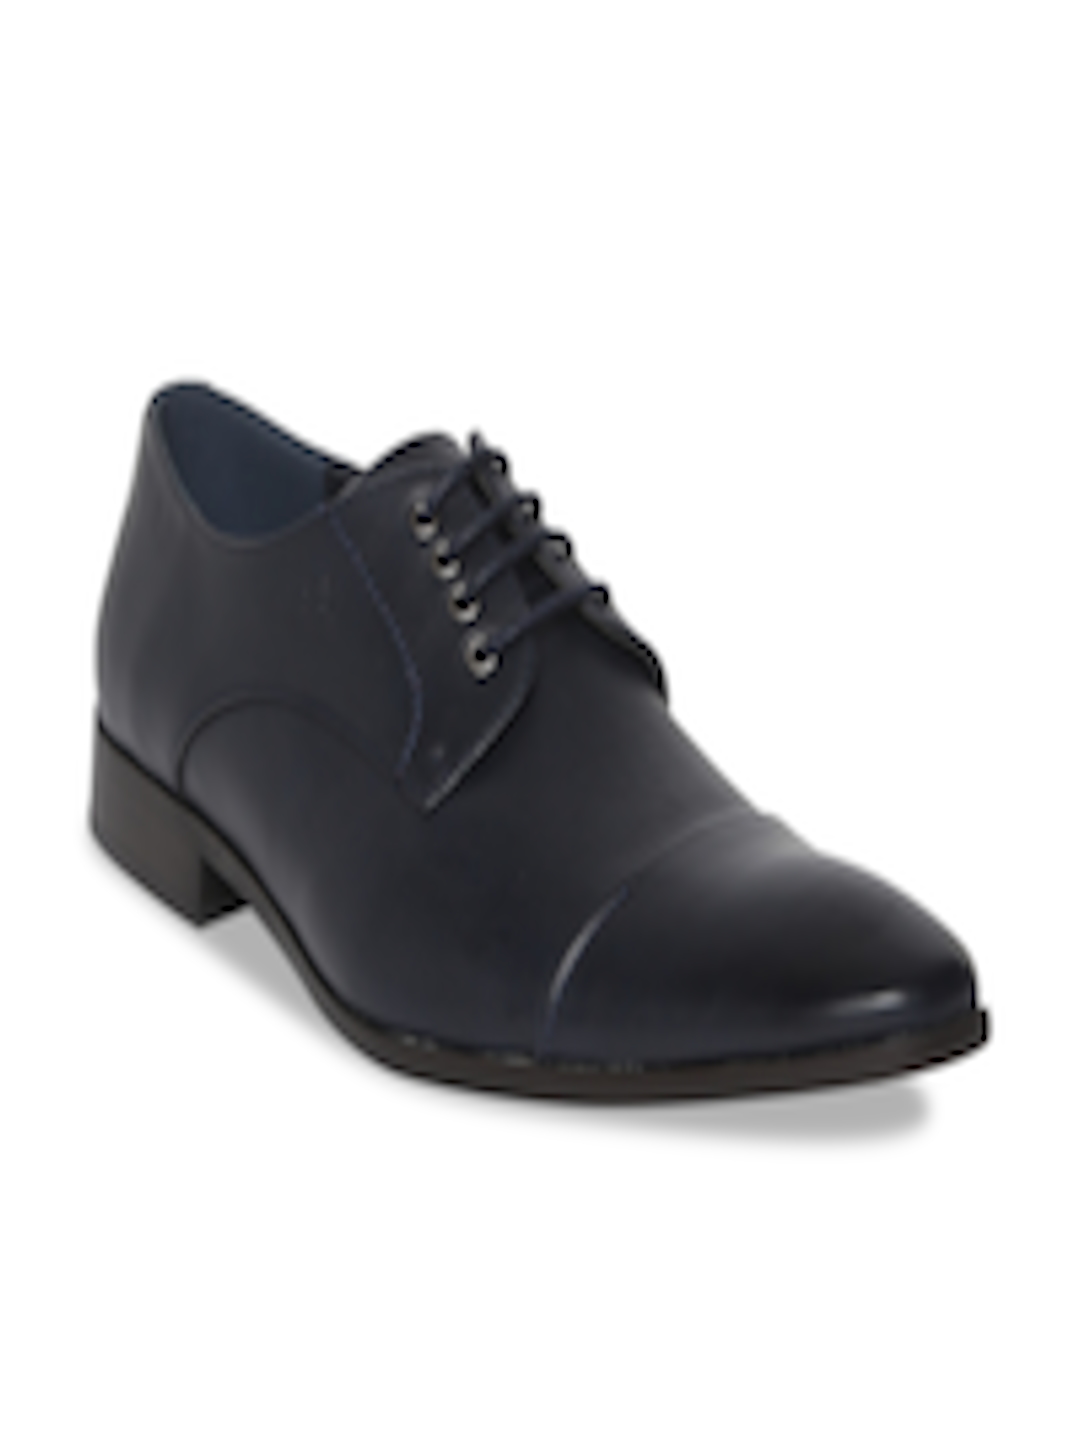 Buy Arrow Men Navy Blue Solid Leather Derbys - Formal Shoes for Men ...